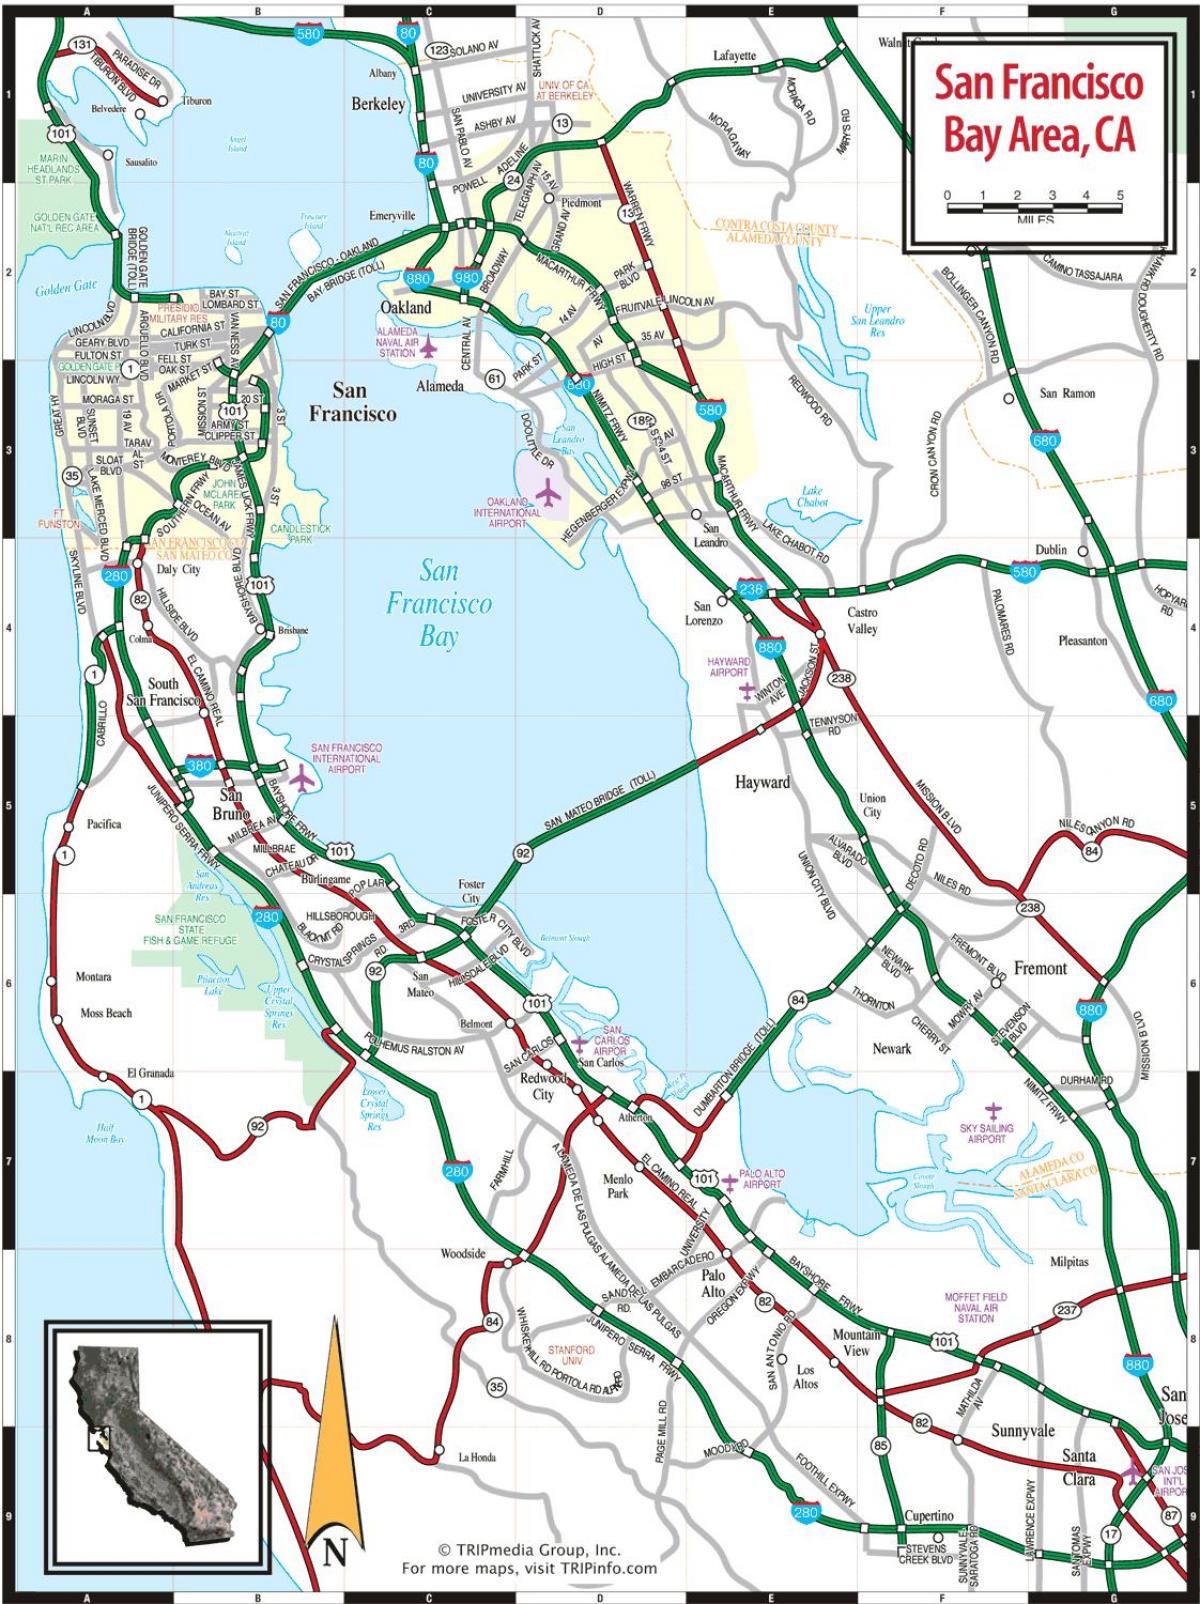 zemljevid San Francisco bay area